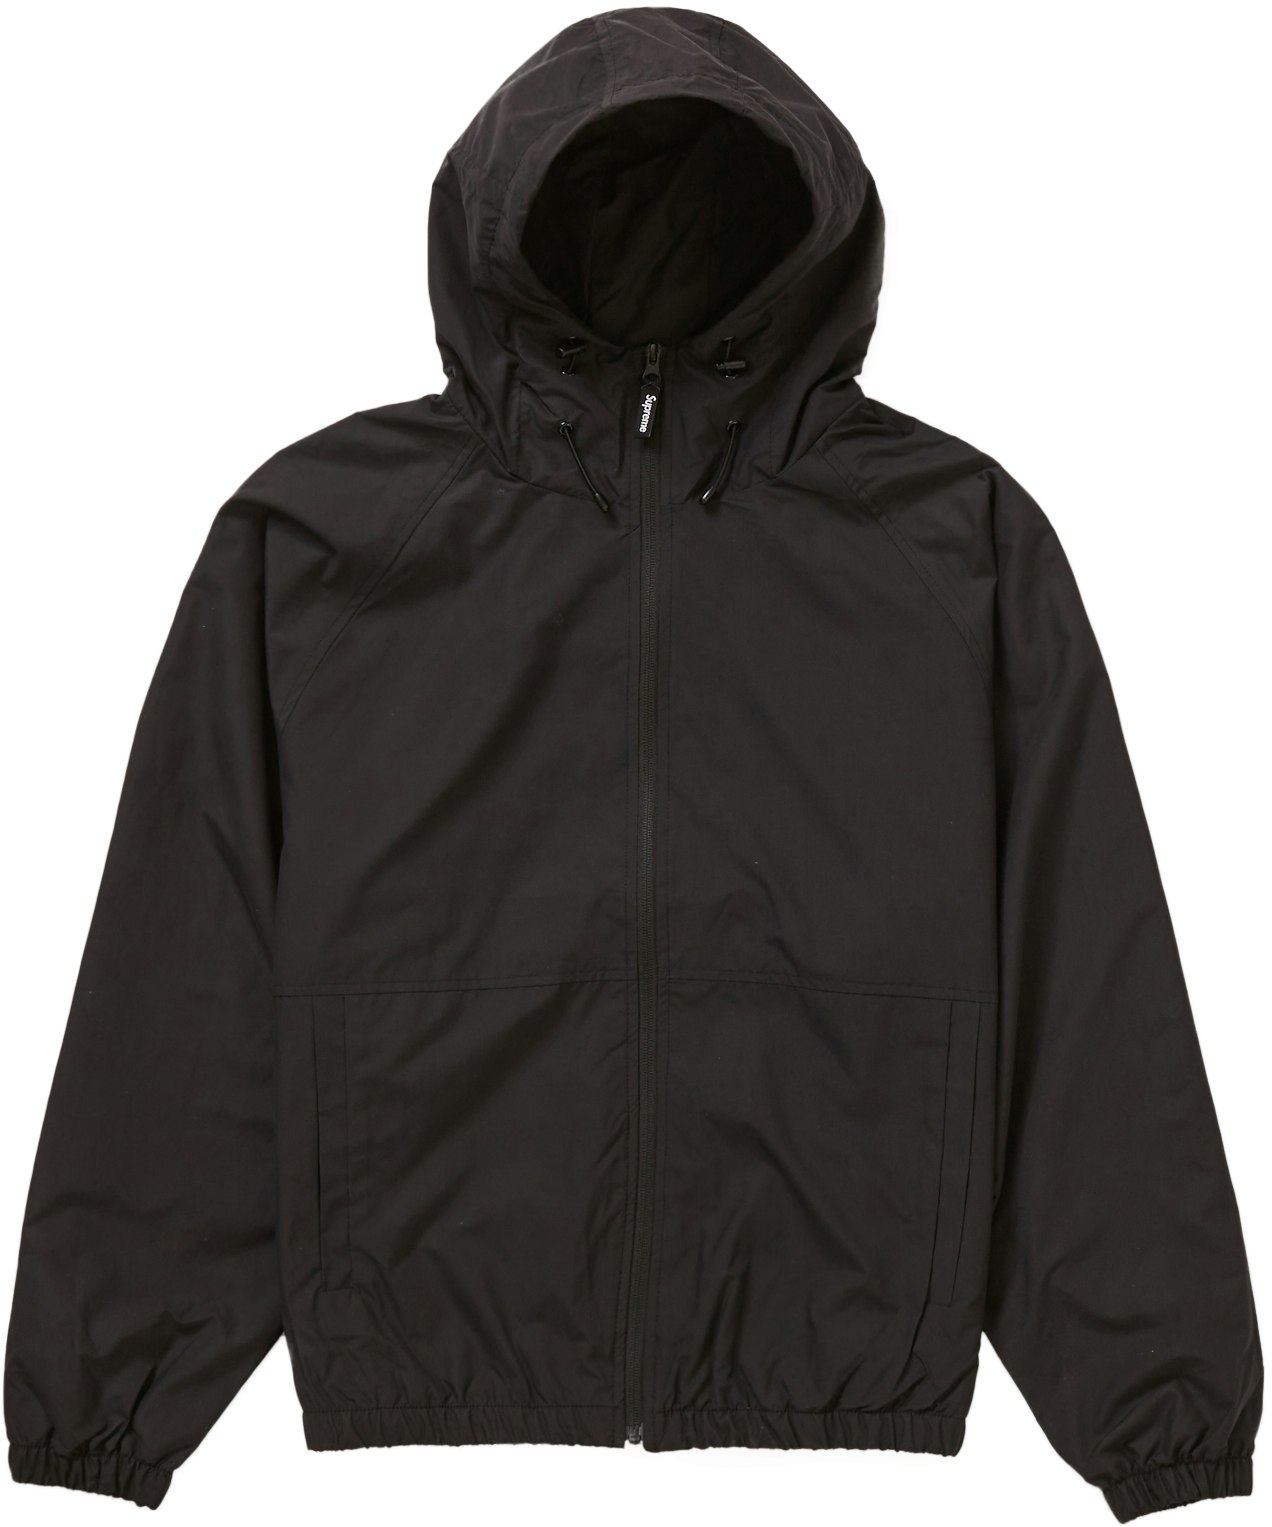 Supreme Lightweight Nylon Hooded Jacket Black - Novelship